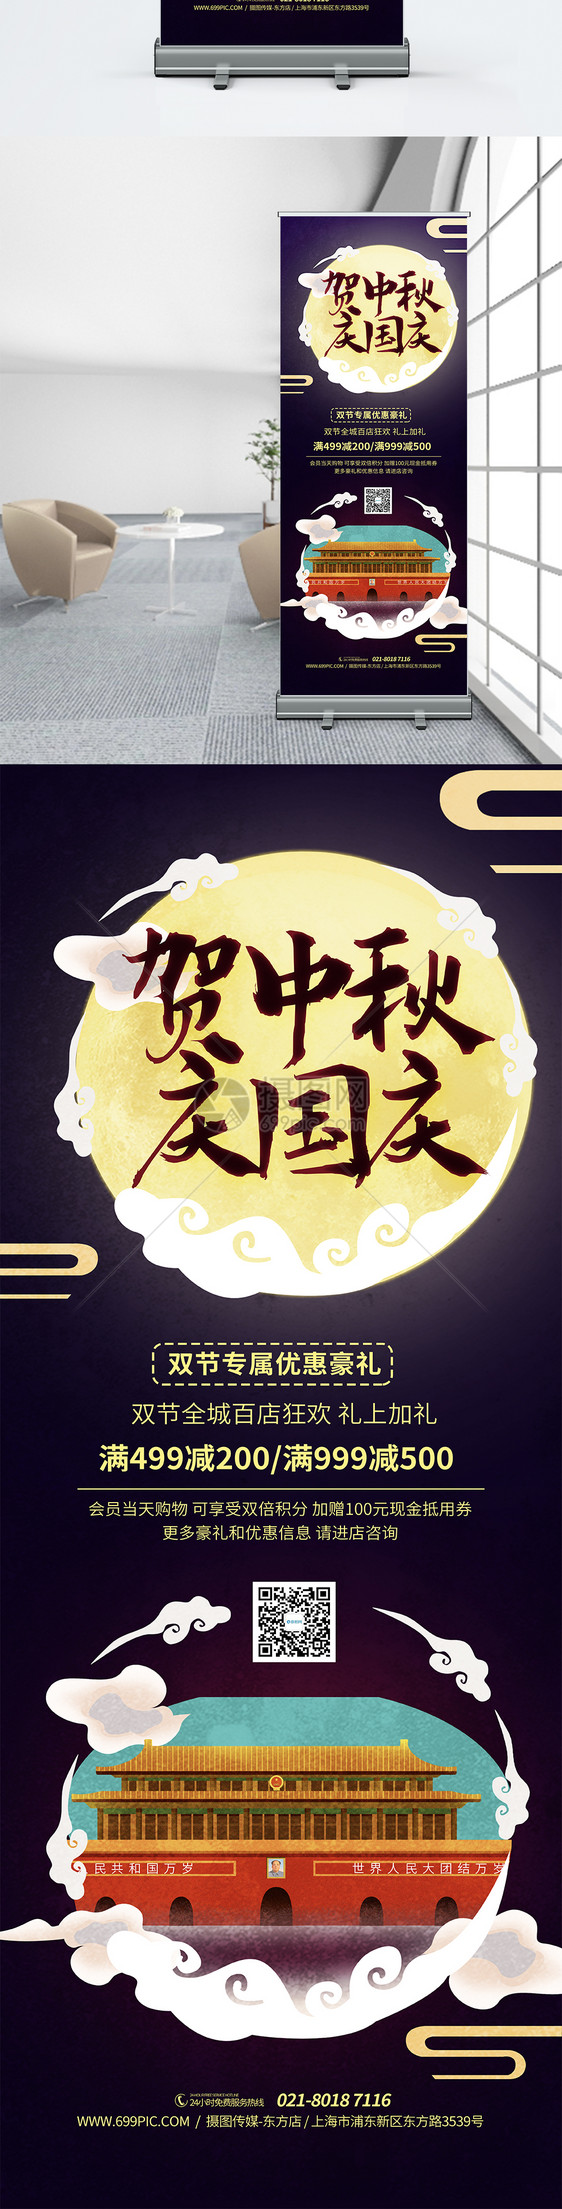 欢度中秋国庆节双节同庆促销模板图片